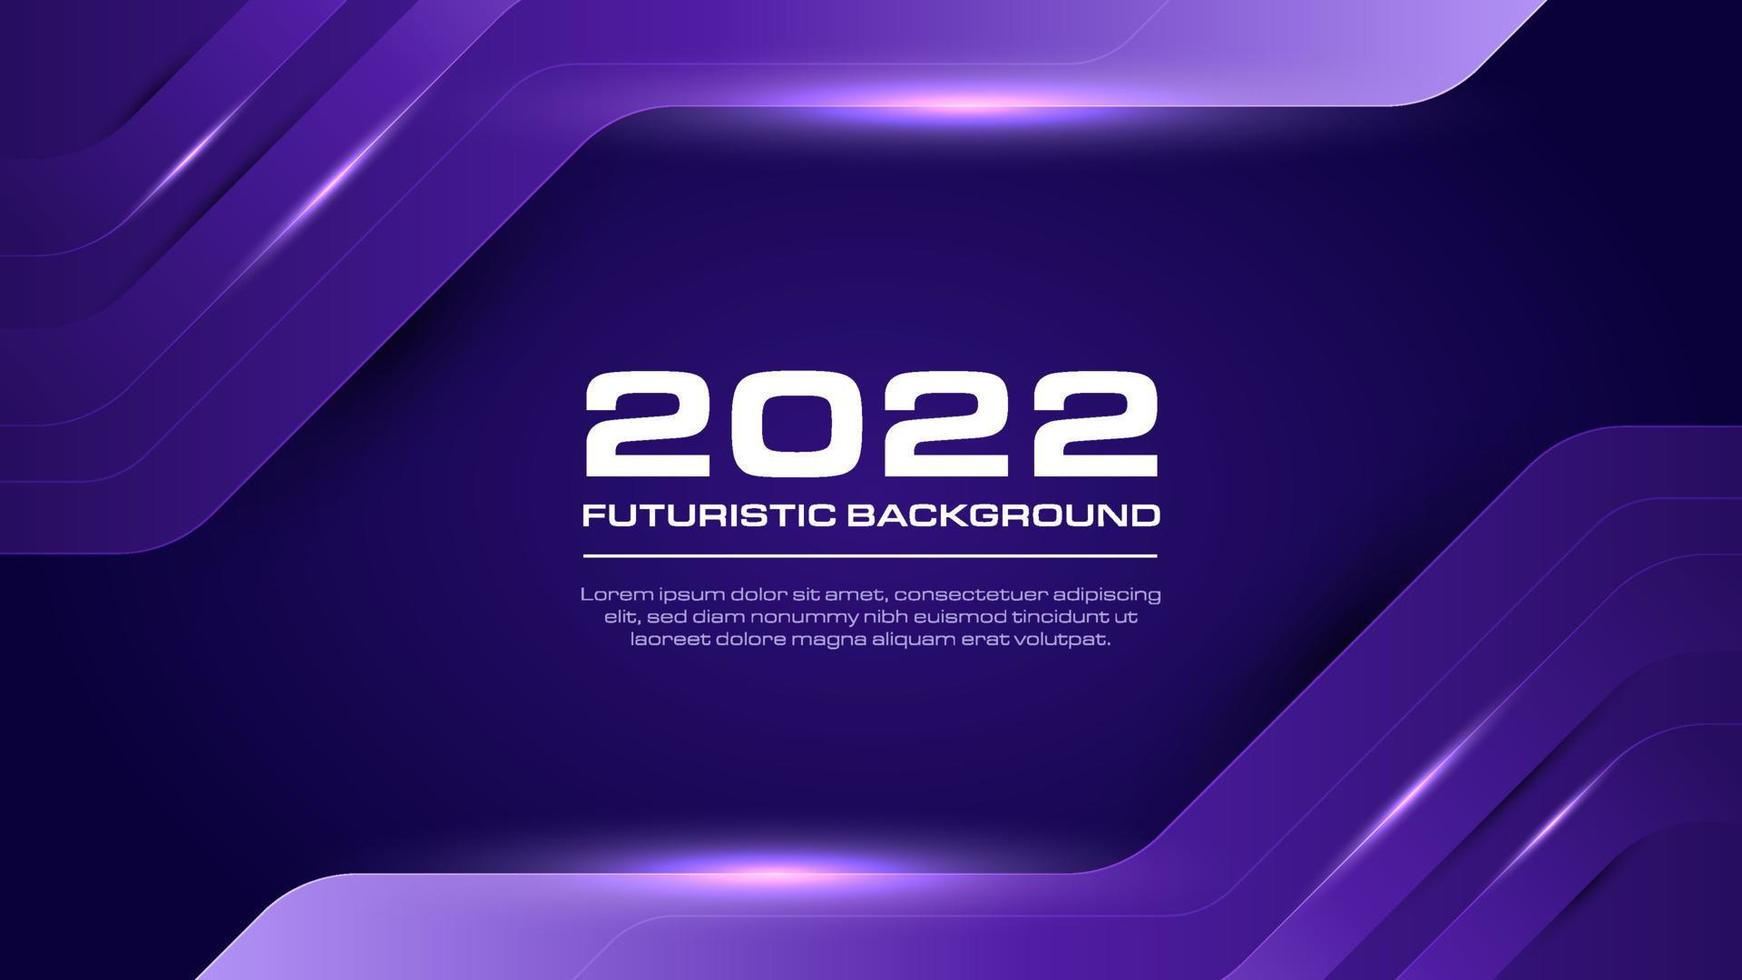 sfondo alla moda nel 2022. sfondo tecnologico futuristico con colore sfumato viola. illustrazione vettoriale elemento dinamico di forma geometrica.